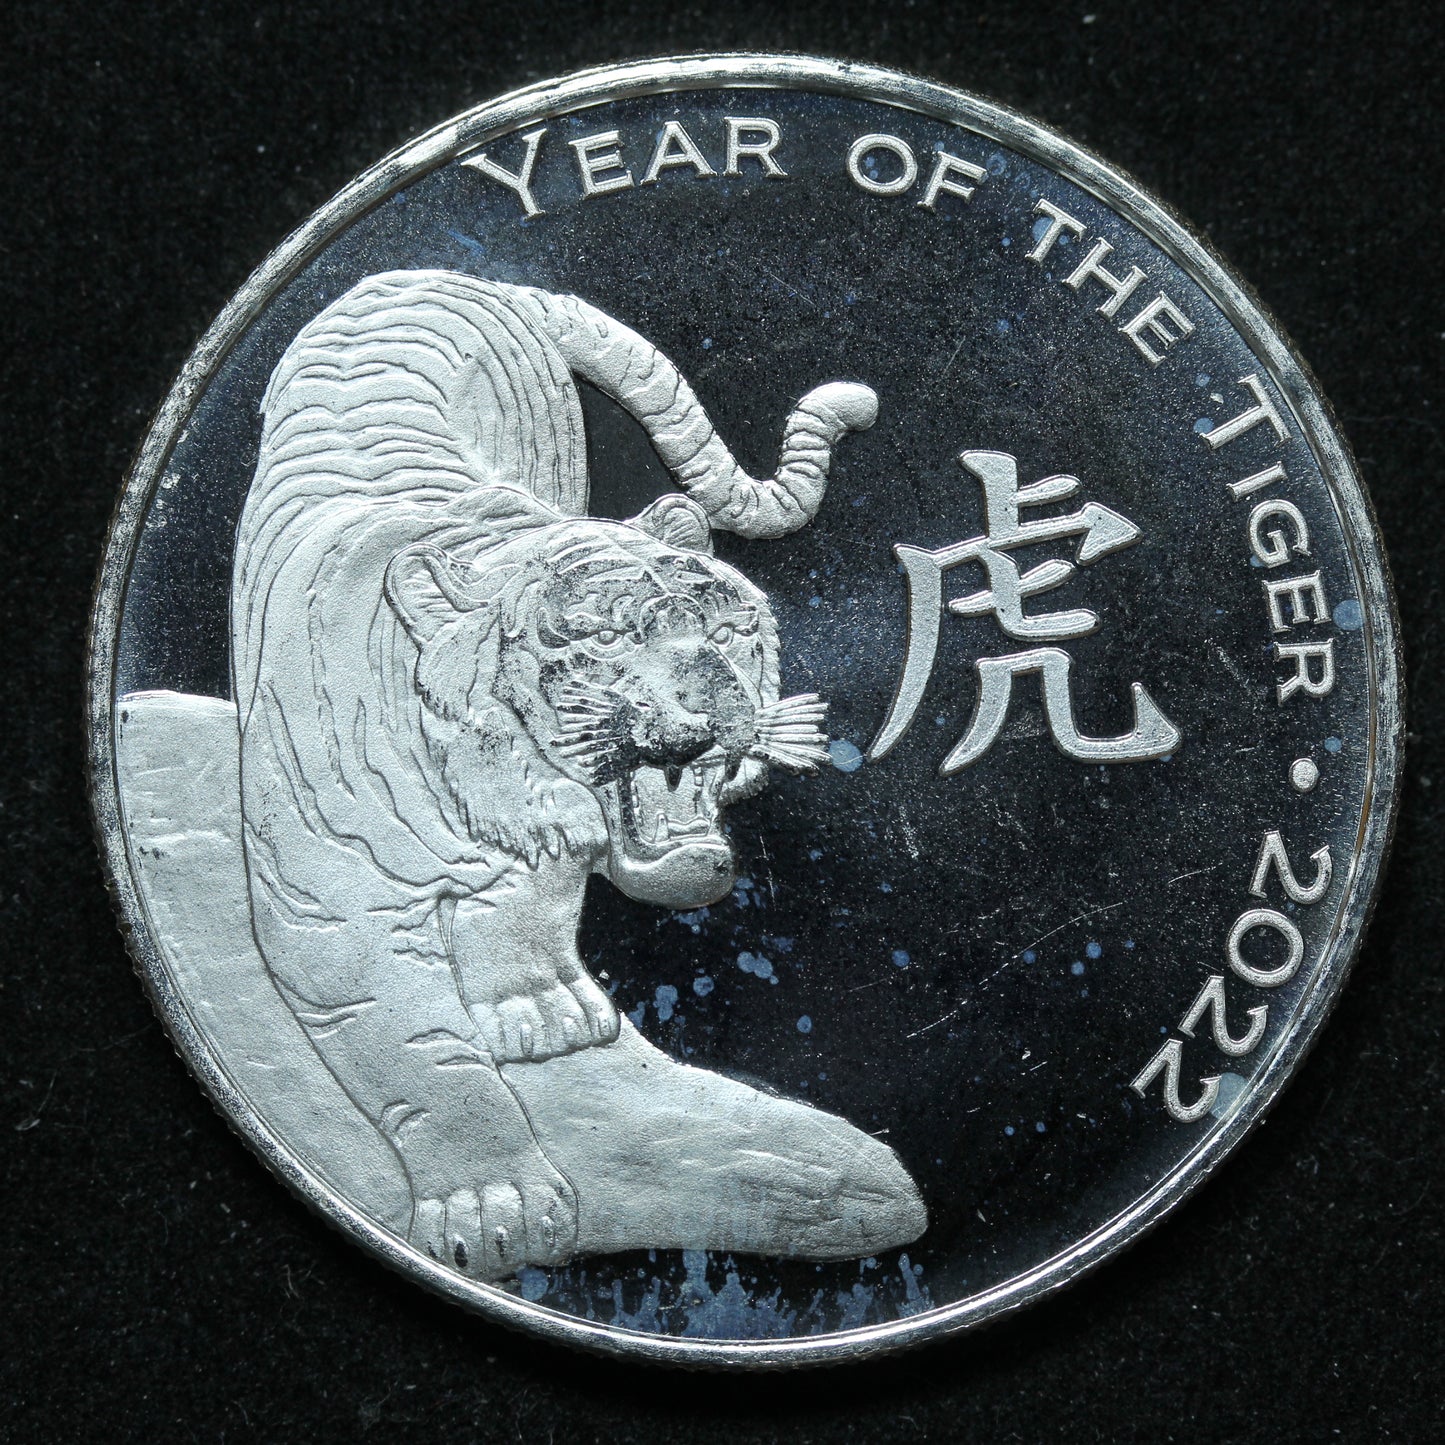 1 oz .999 Fine Silver Round - 2022 Year of the Tiger Art Round